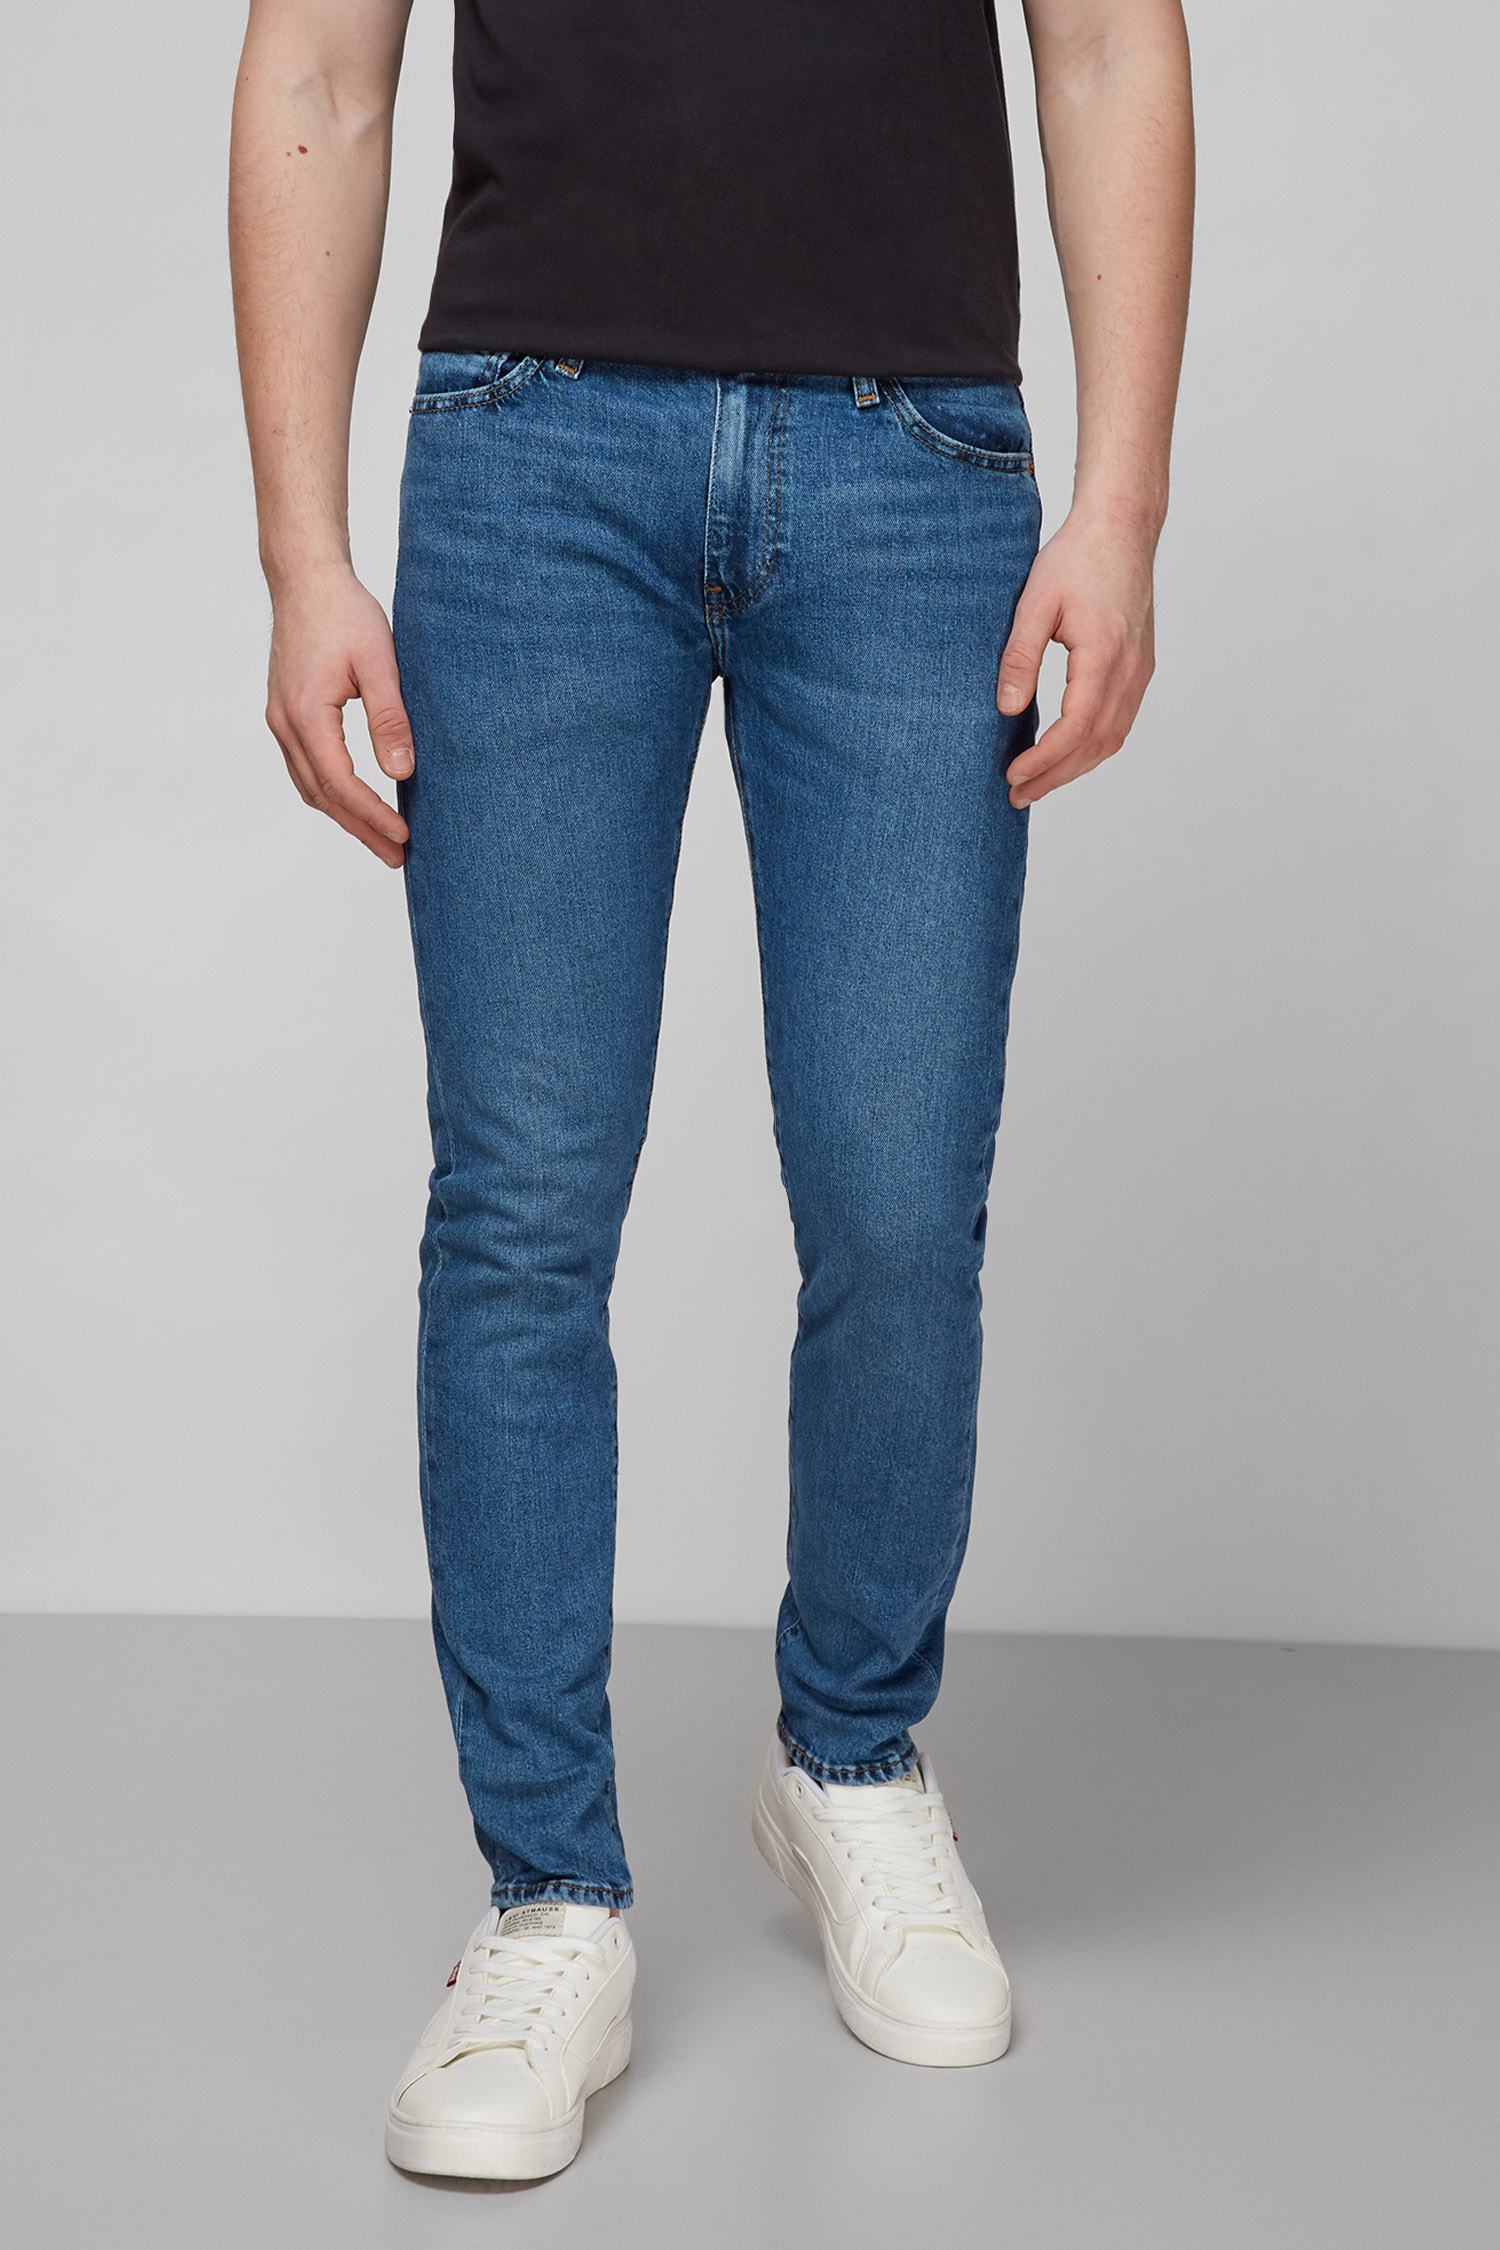 Синие джинсы 512™ Slim Taper для парней Levi’s® 28833;1052